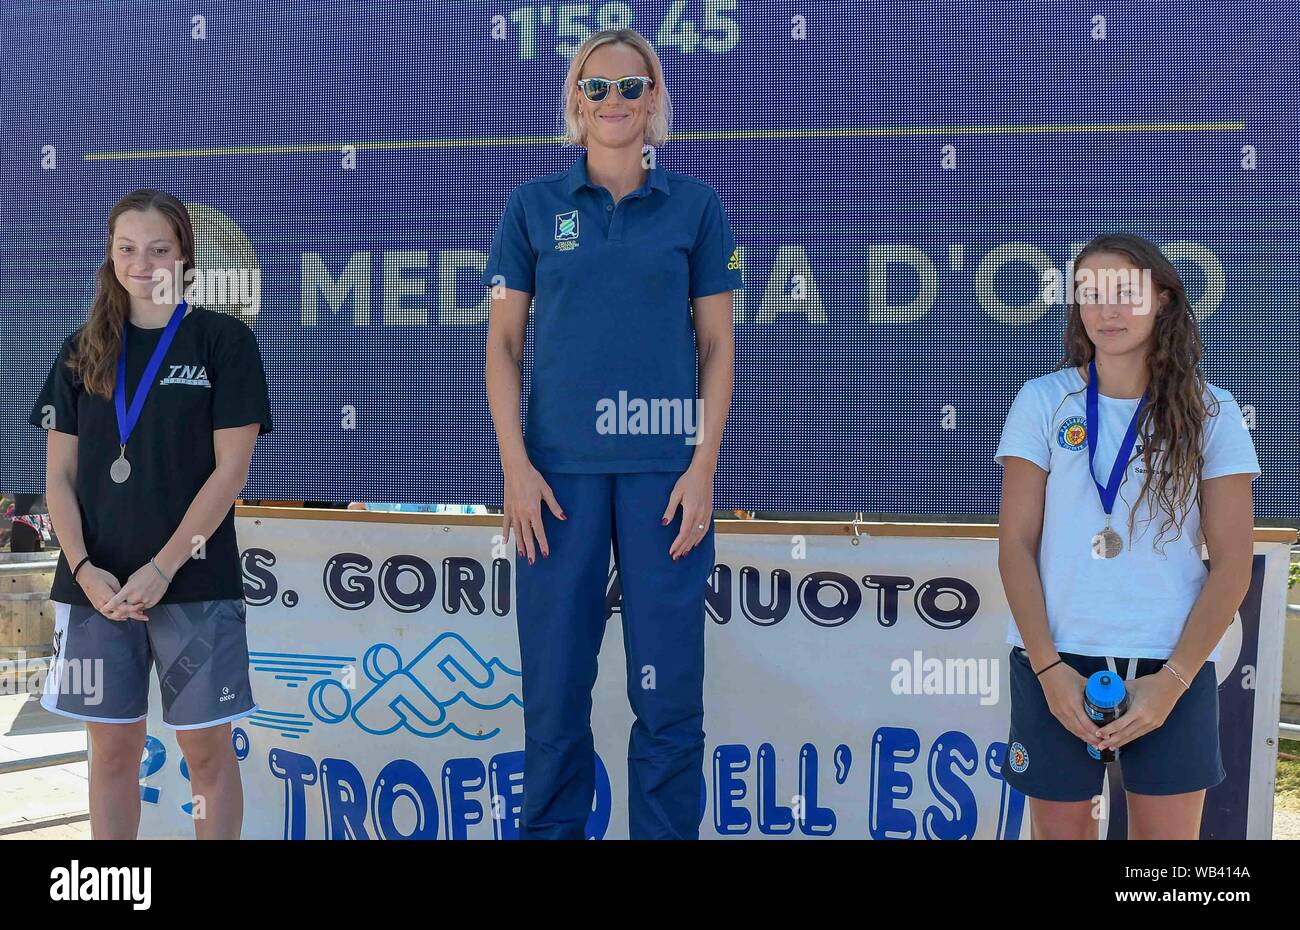 FEDERICA PELLEGRINI SUL PODIO DE 200SL durante el Trofeo dell'est 2019, Gorizia, Italia, 16 de junio de 2019, la natación Natación Foto de stock